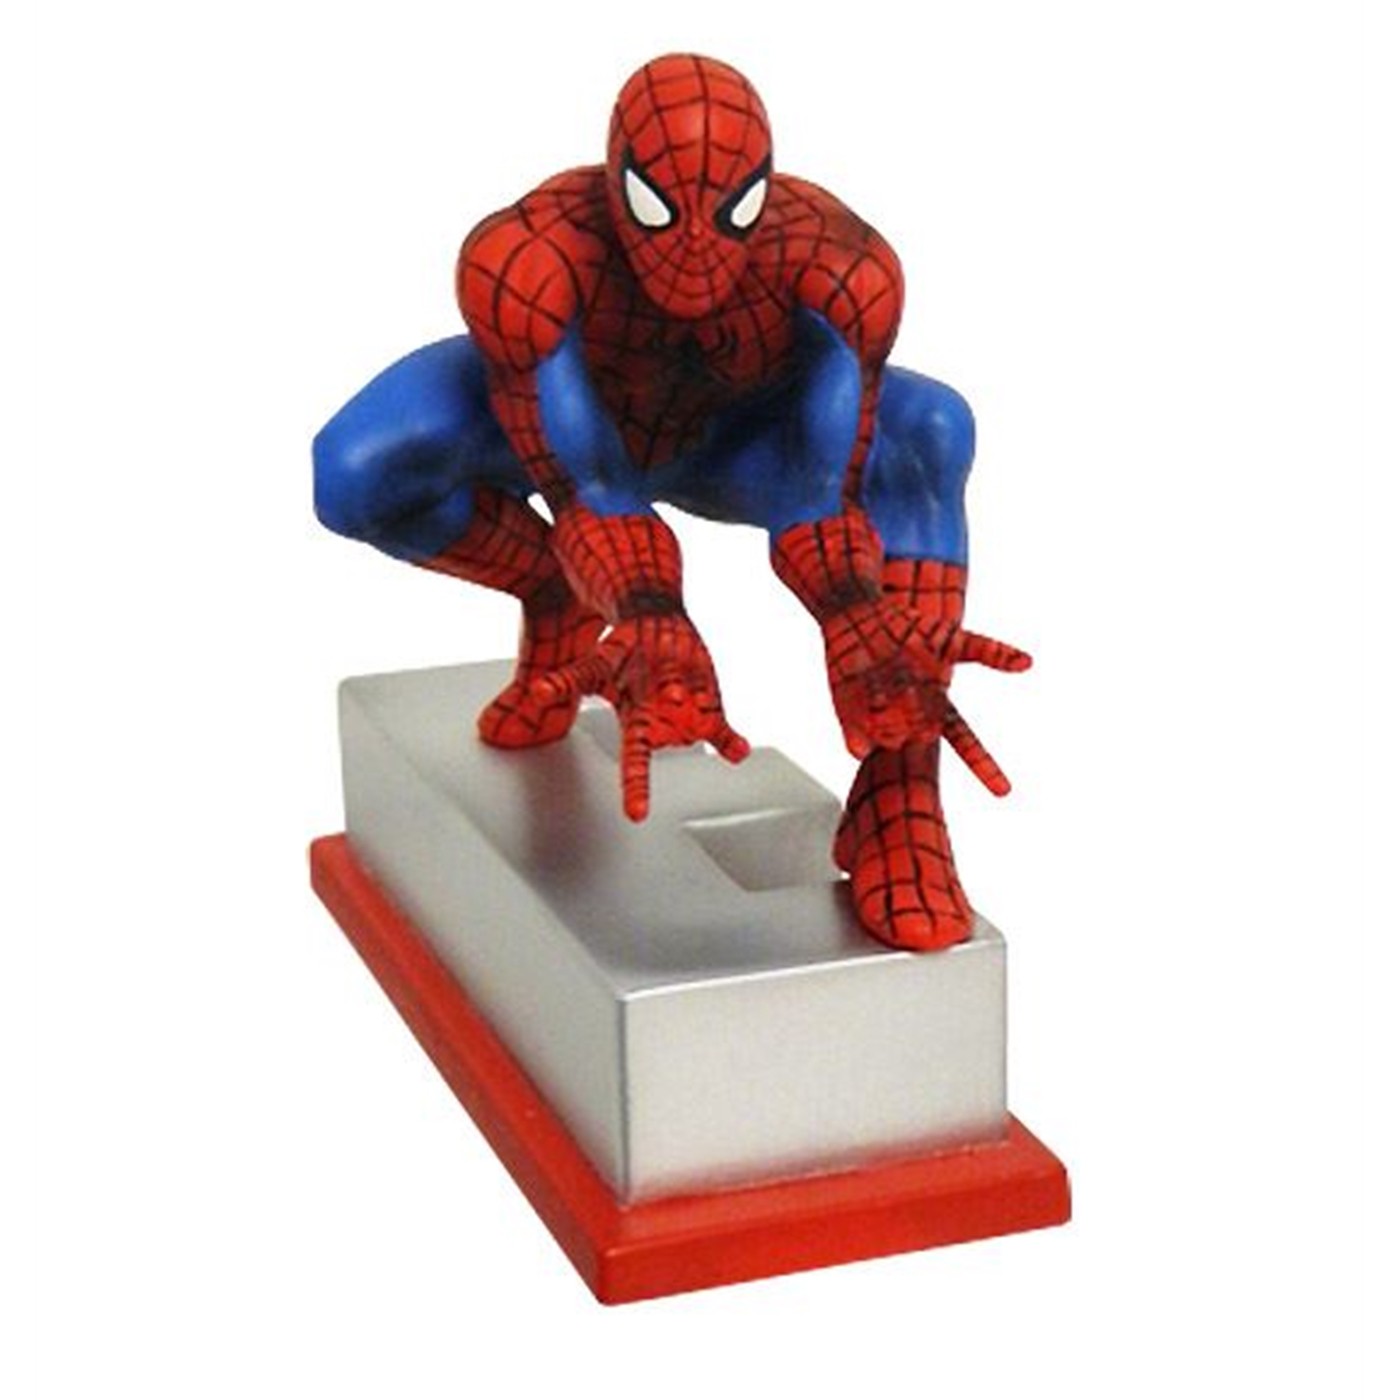 Spiderman Marvel "E" Collectible Figurine